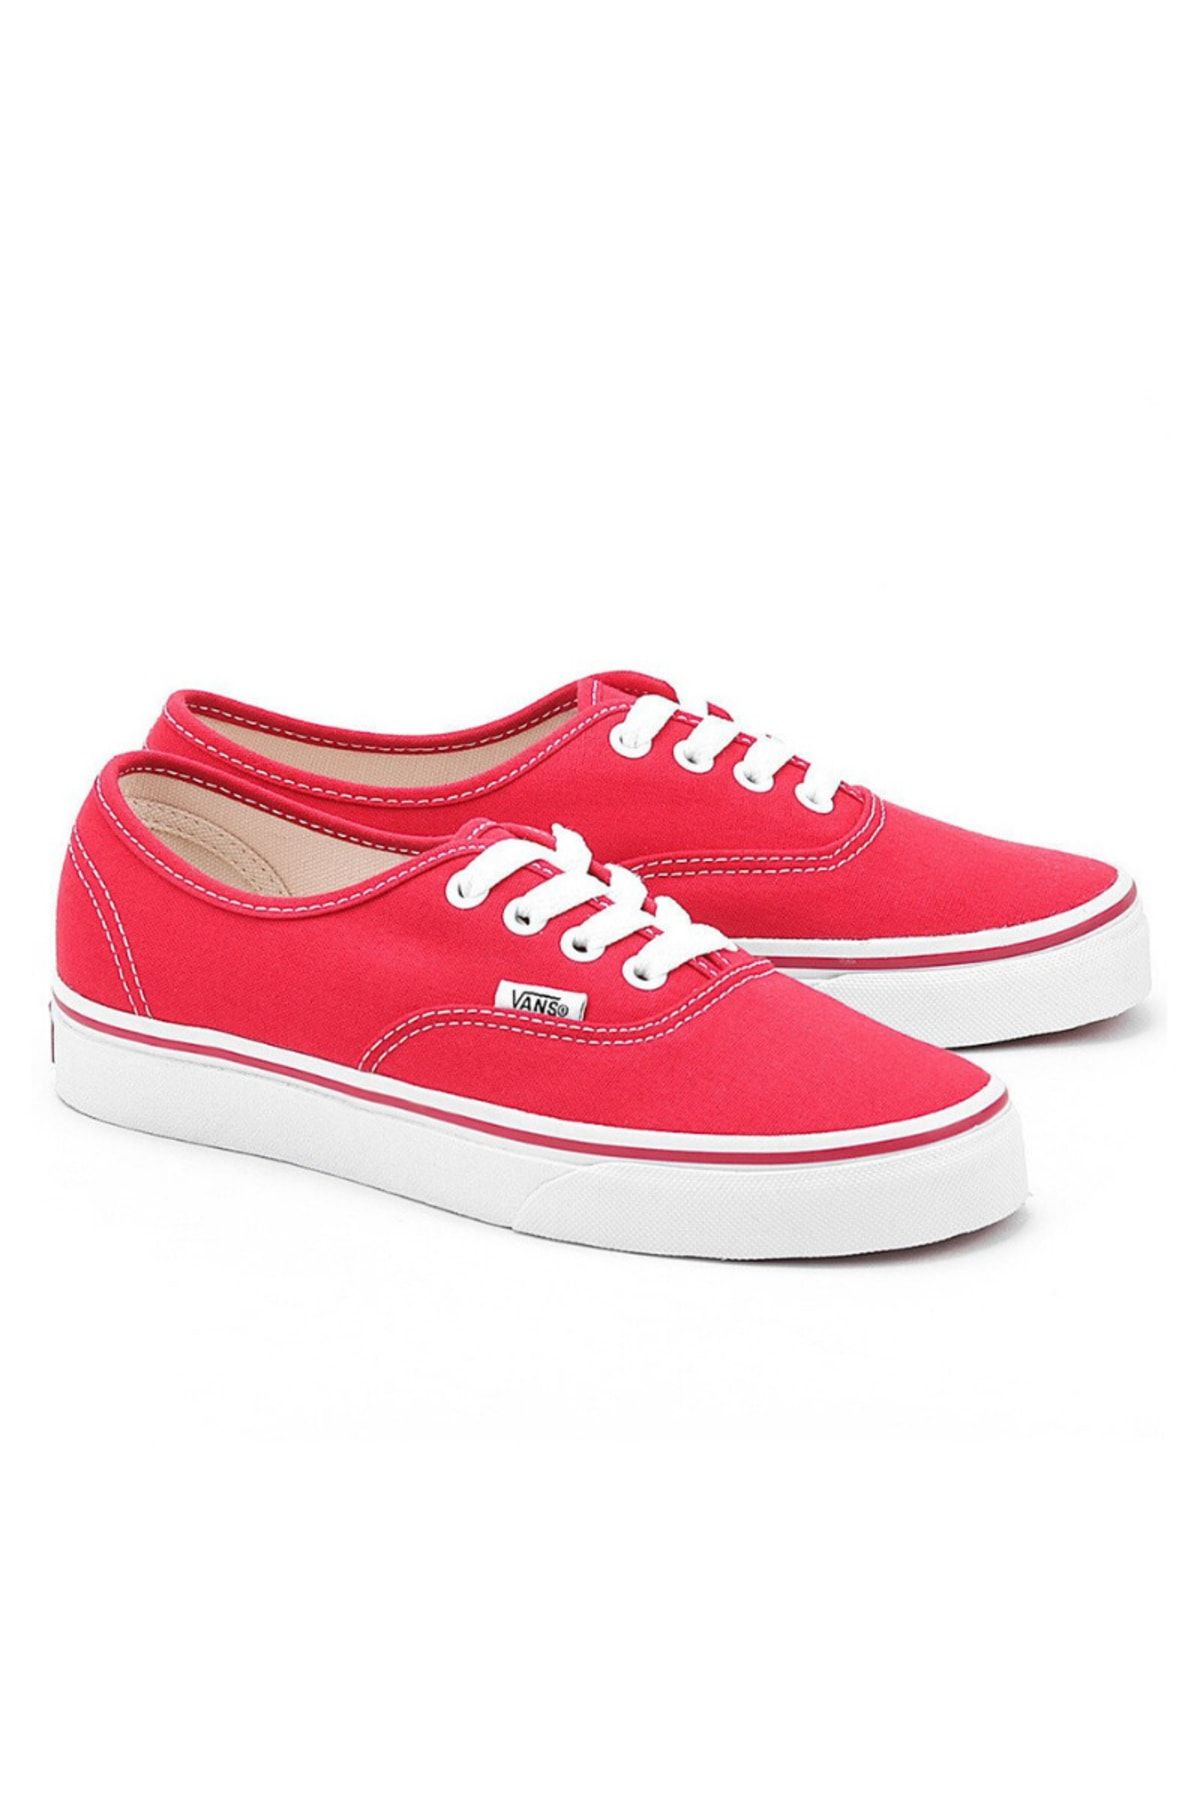 Vans AUTHENTIC Kırmızı Kadın Sneaker 100133059